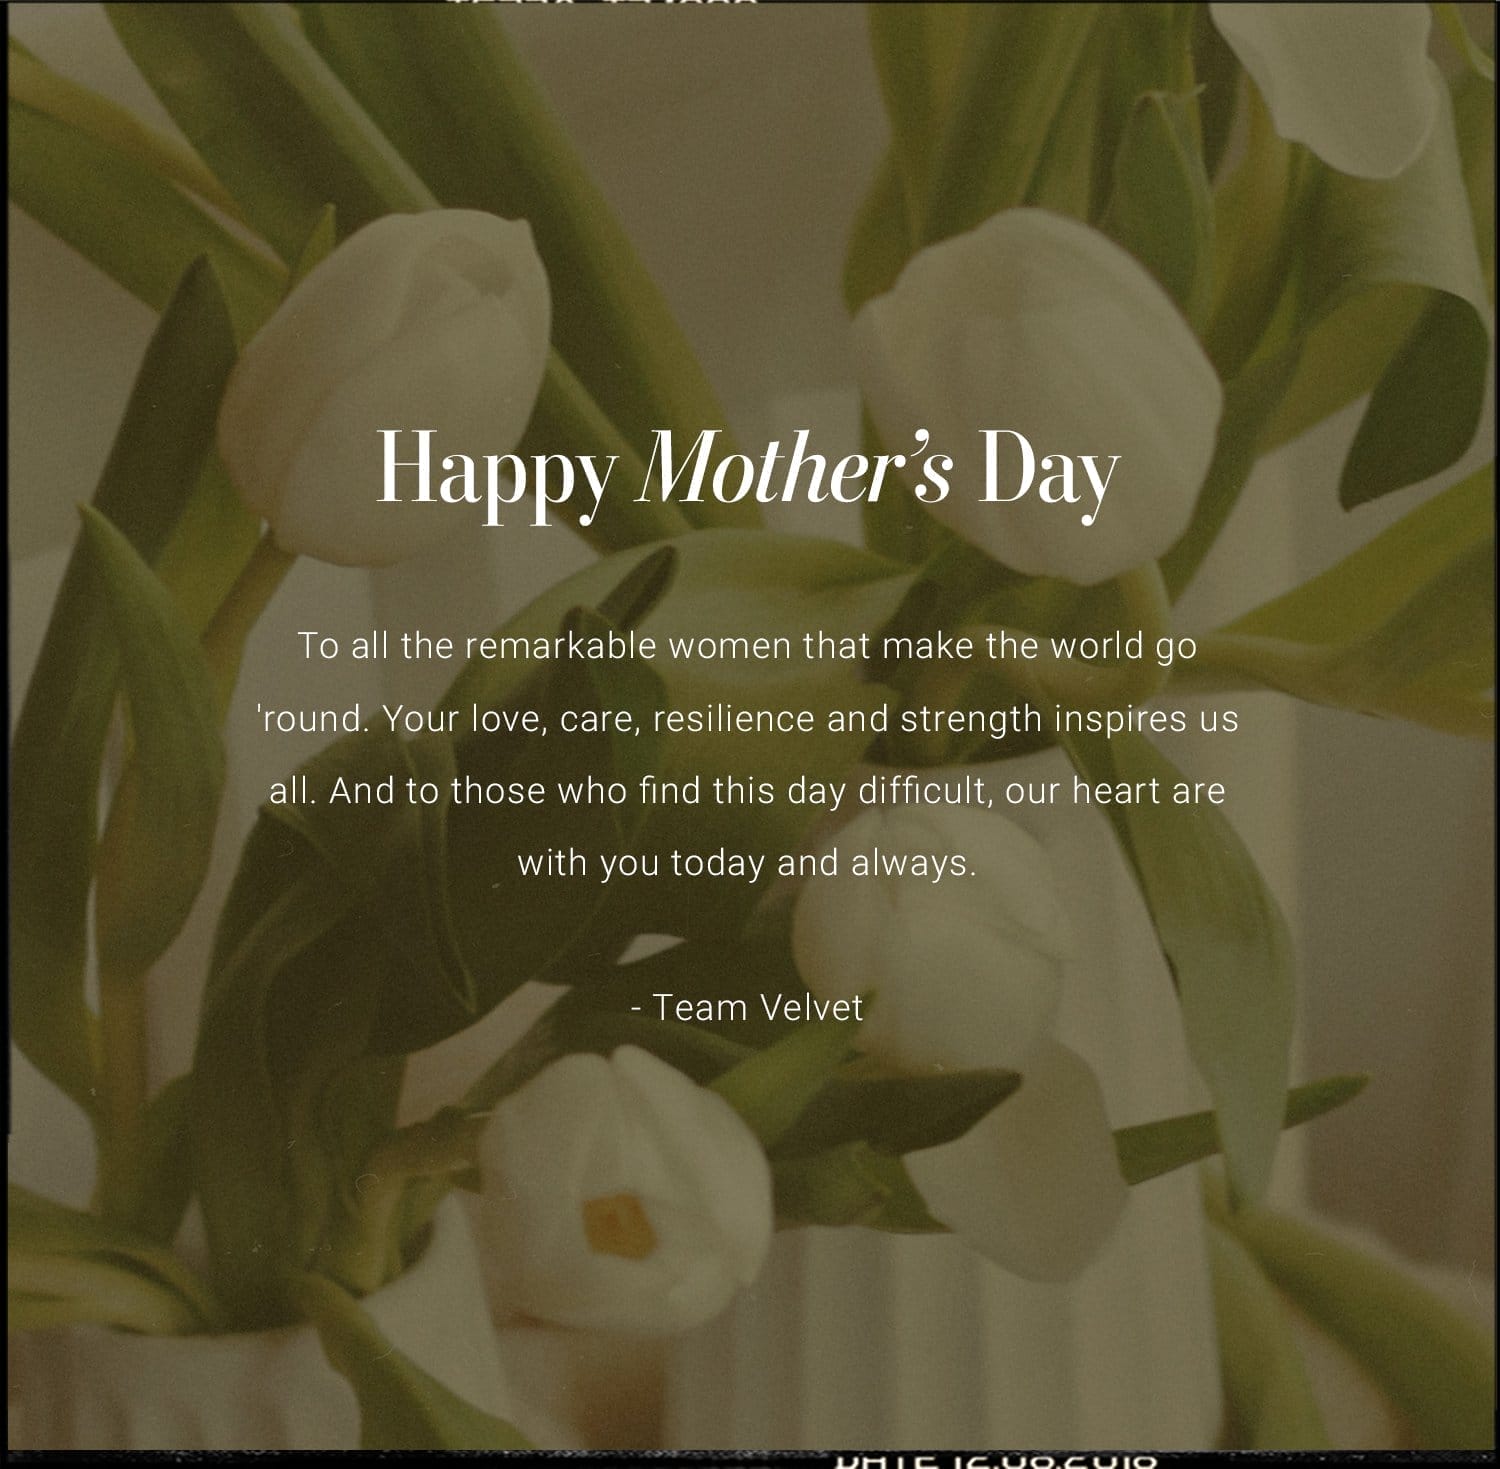 Happy Mother's Day from Velvet!